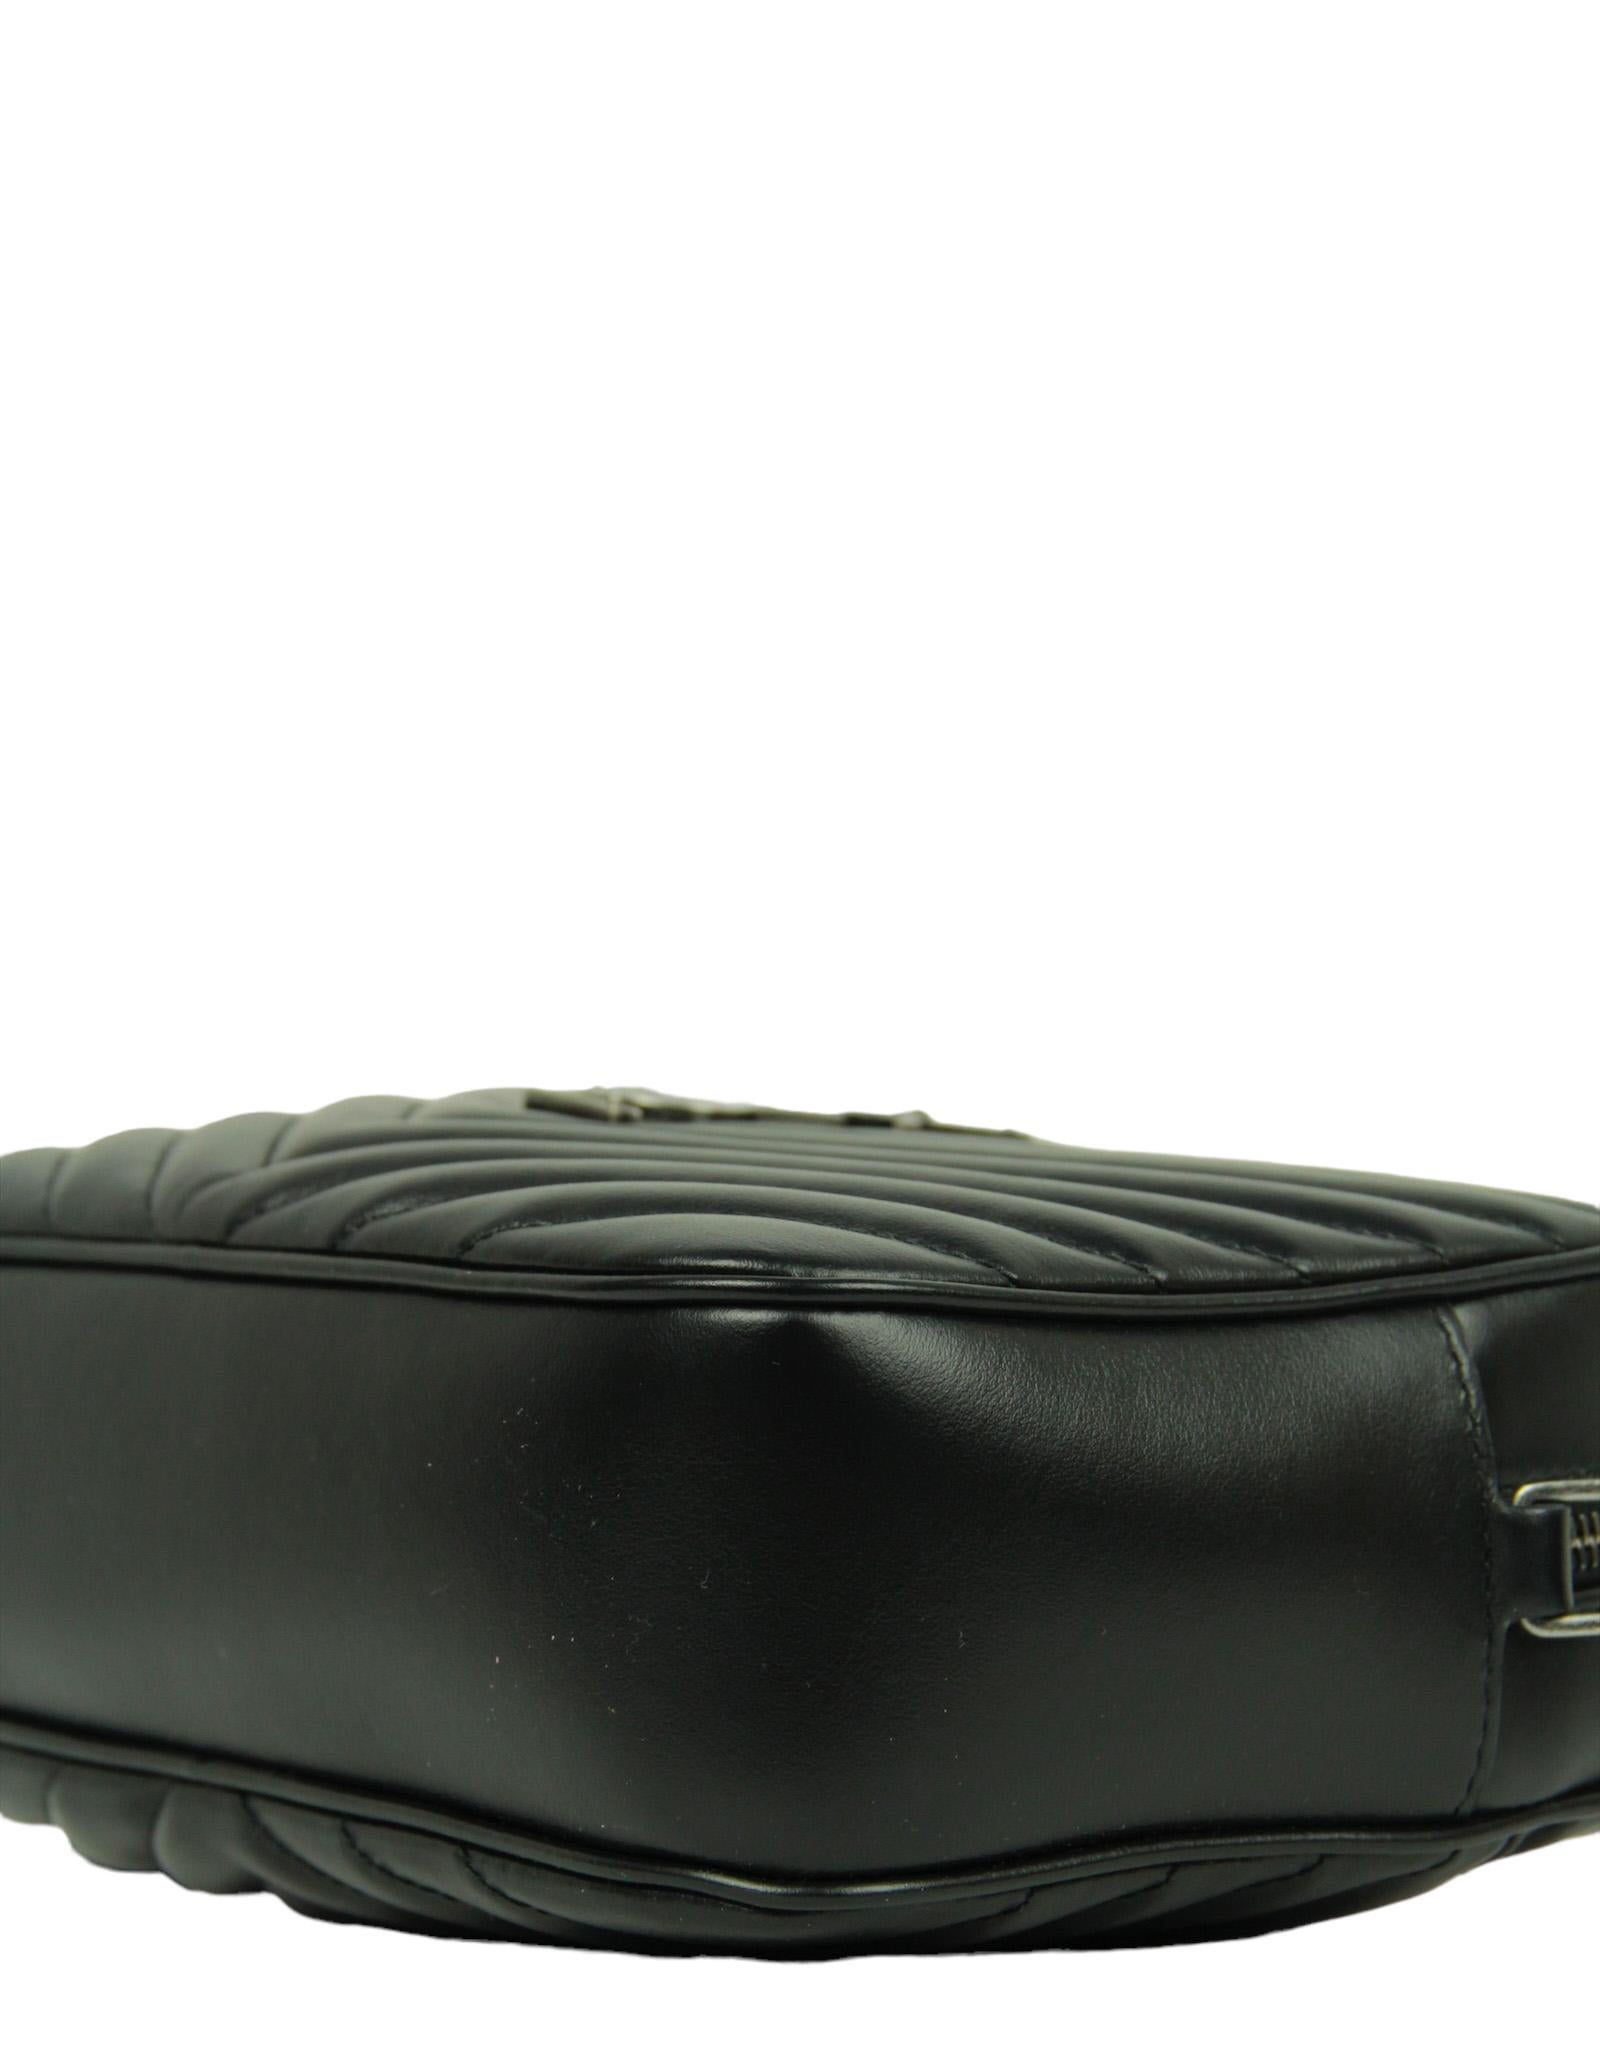 Saint Laurent Black Calfskin Matelasse Monogram Lou Camera Bag For Sale 1